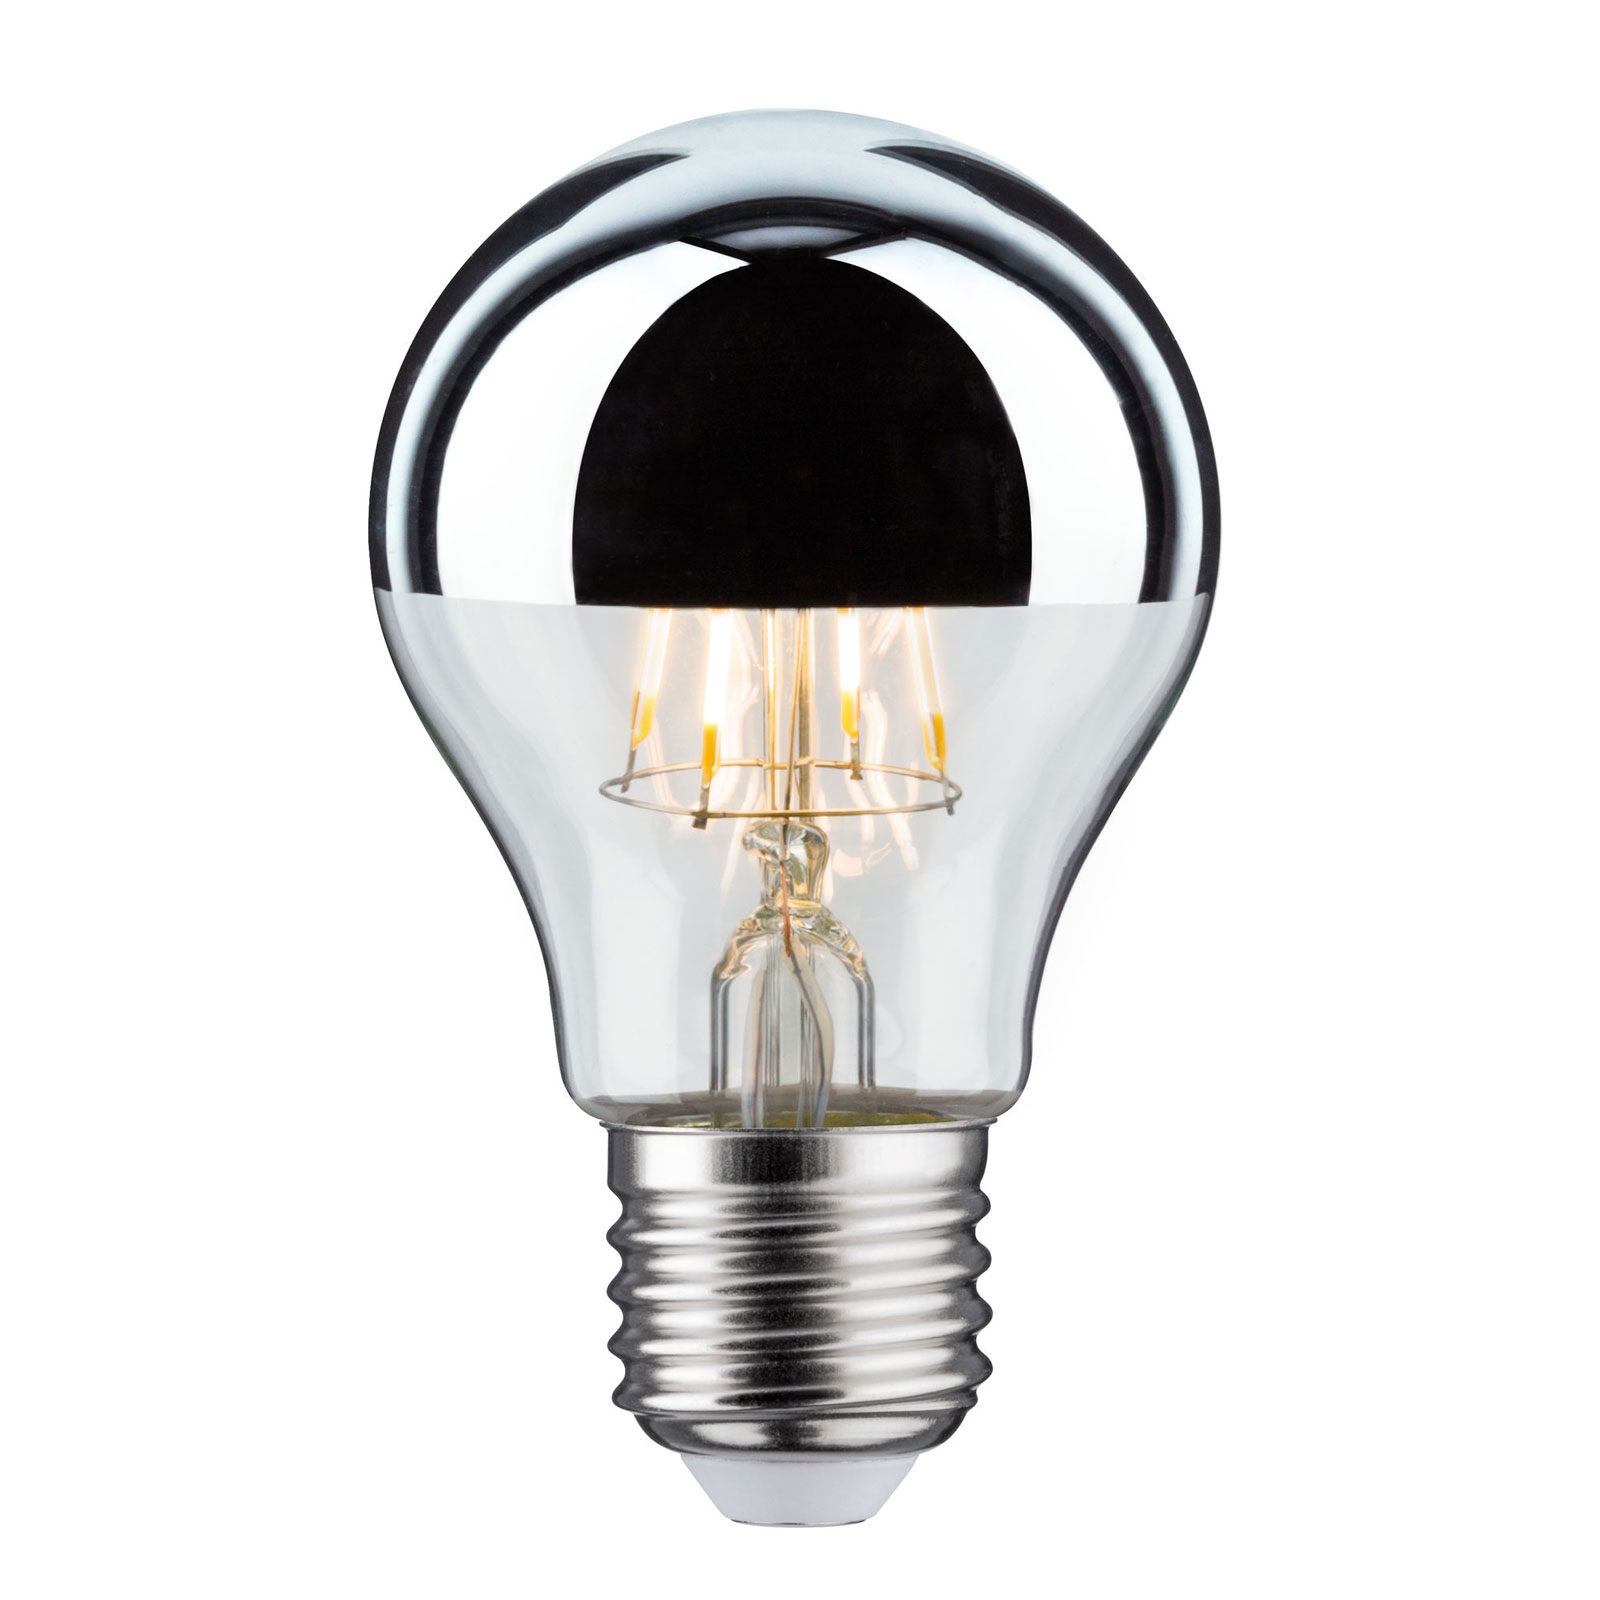 LED lamp E27 druppel 827 hoofdspiegel 4.8W